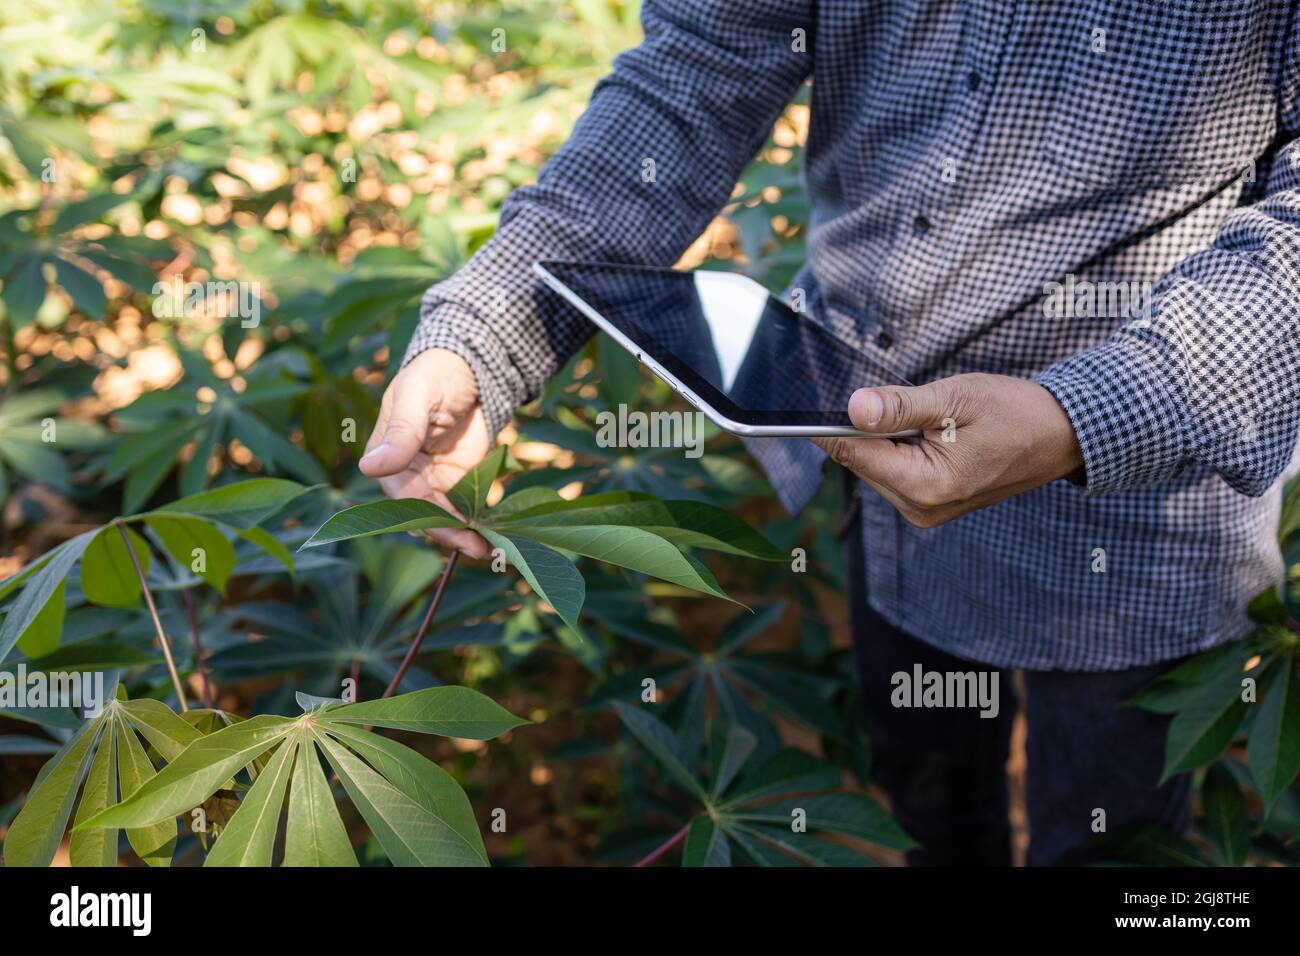 Agricoltore intelligente un uomo asiatico utilizza un tablet per analizzare le colture che cresce nella sua fattoria durante il giorno. Foto Stock